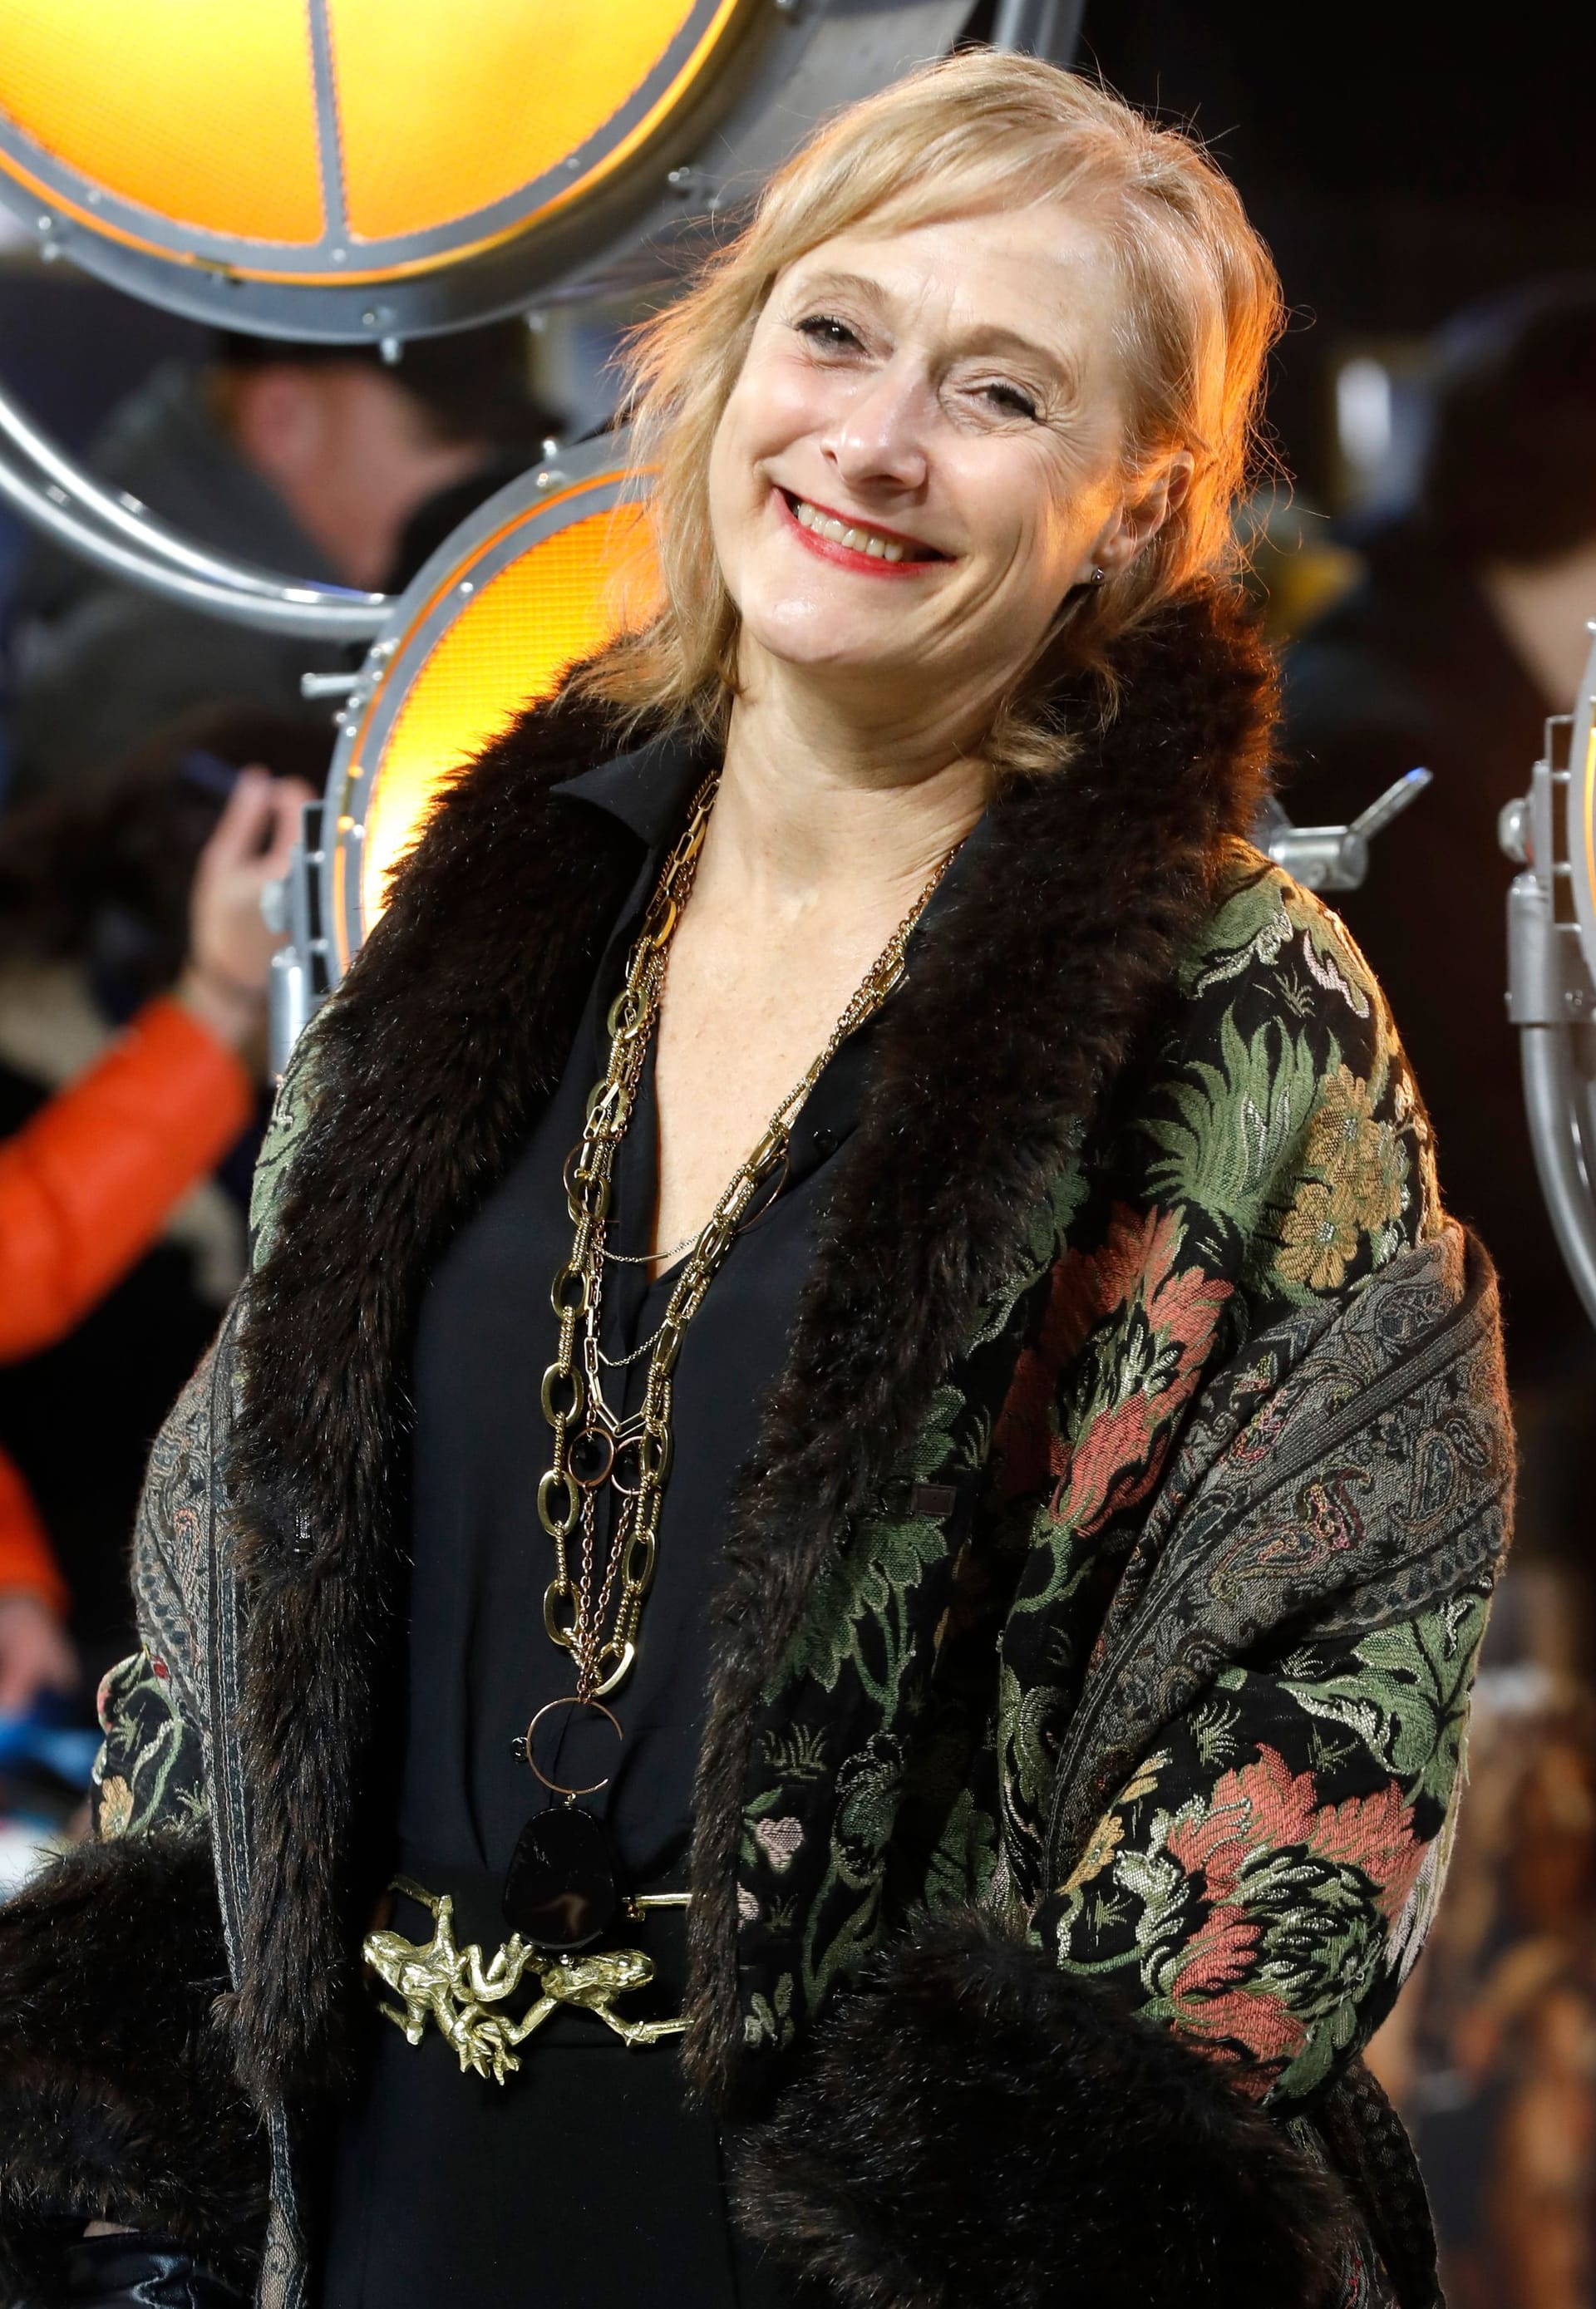 Caroline Goodall im Januar 2023 bei der Premiere von "The Fabelmans" in London.